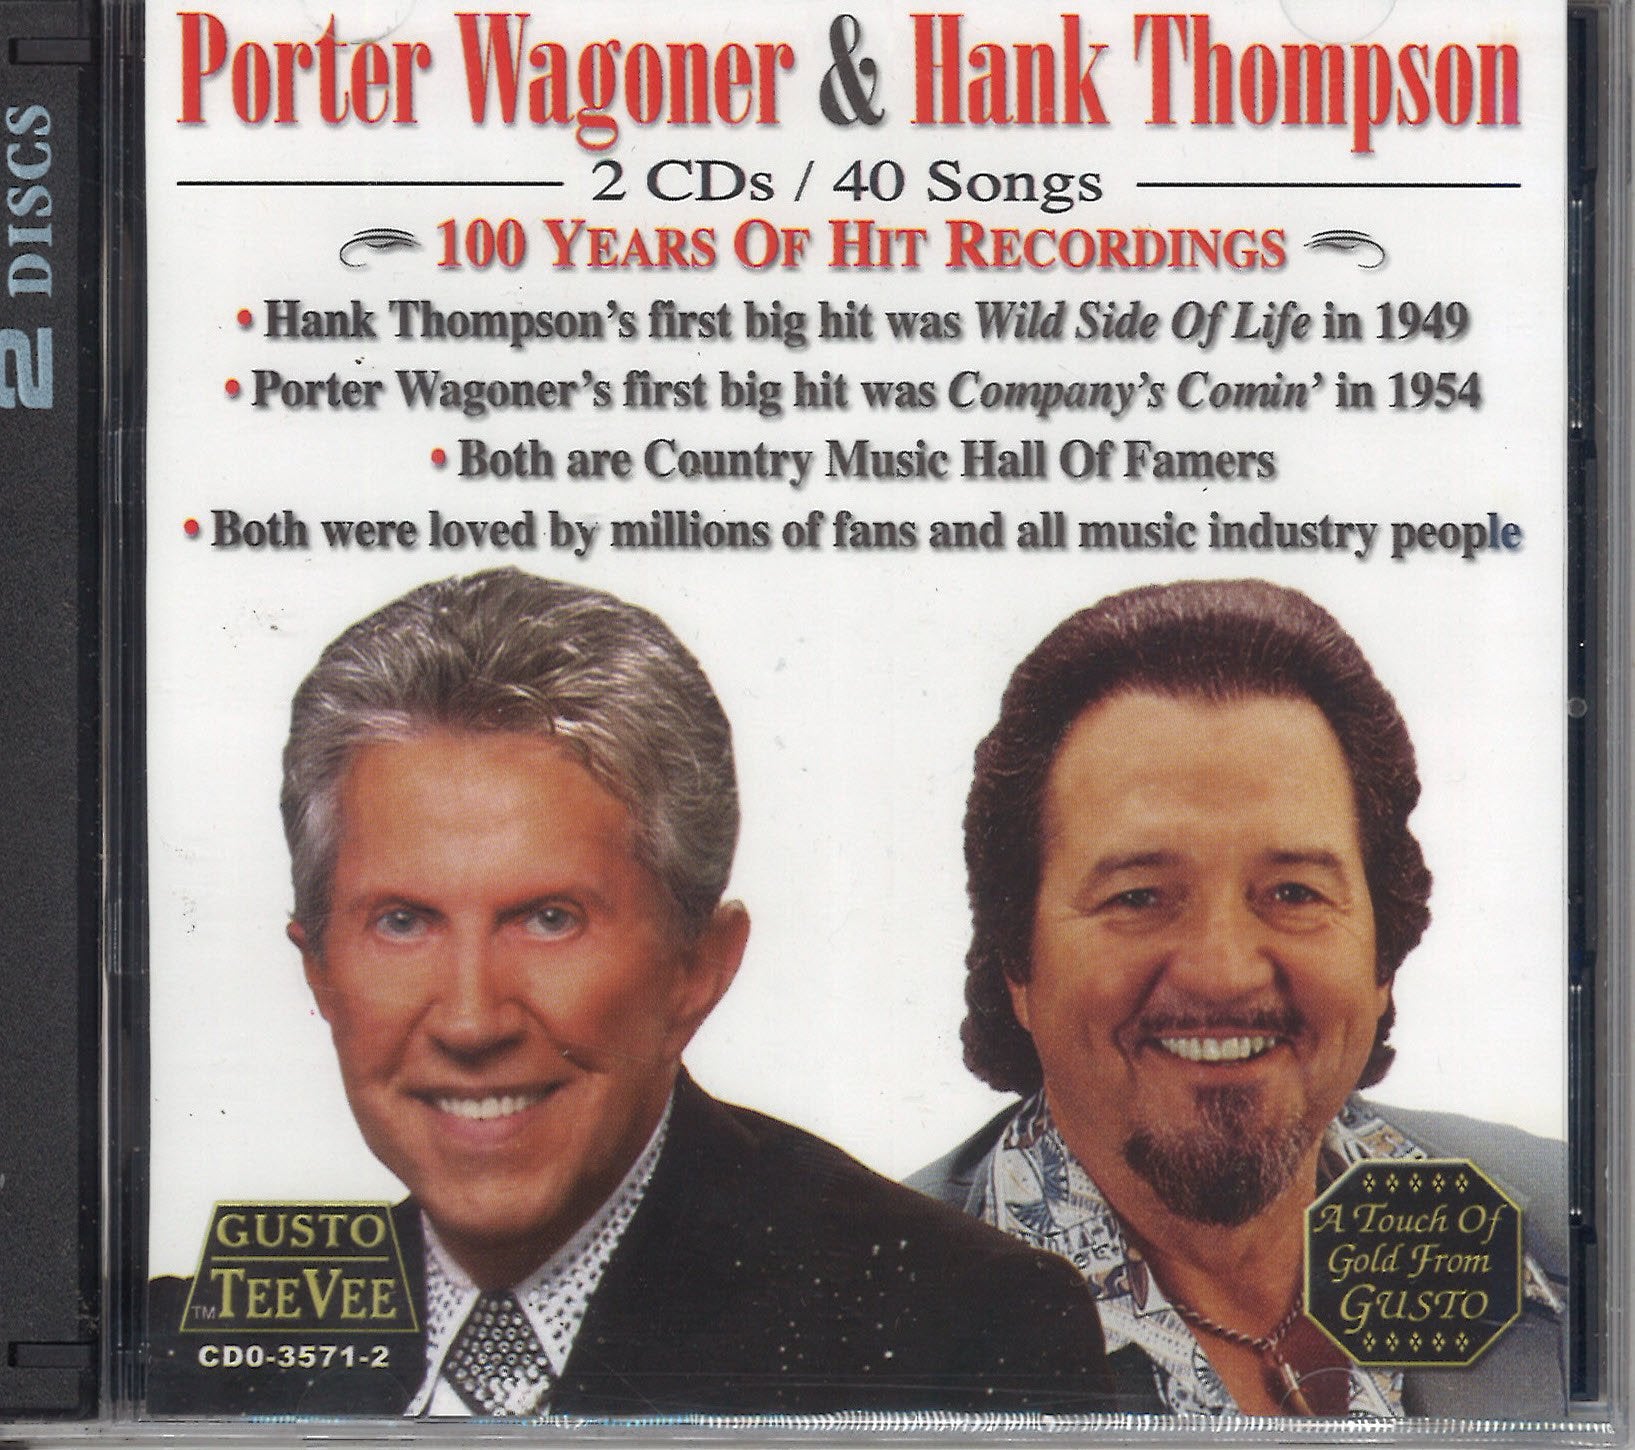 Porter Wagoner & Hank Thompson 100 Years Of Hit Recordings: 2 CD Set